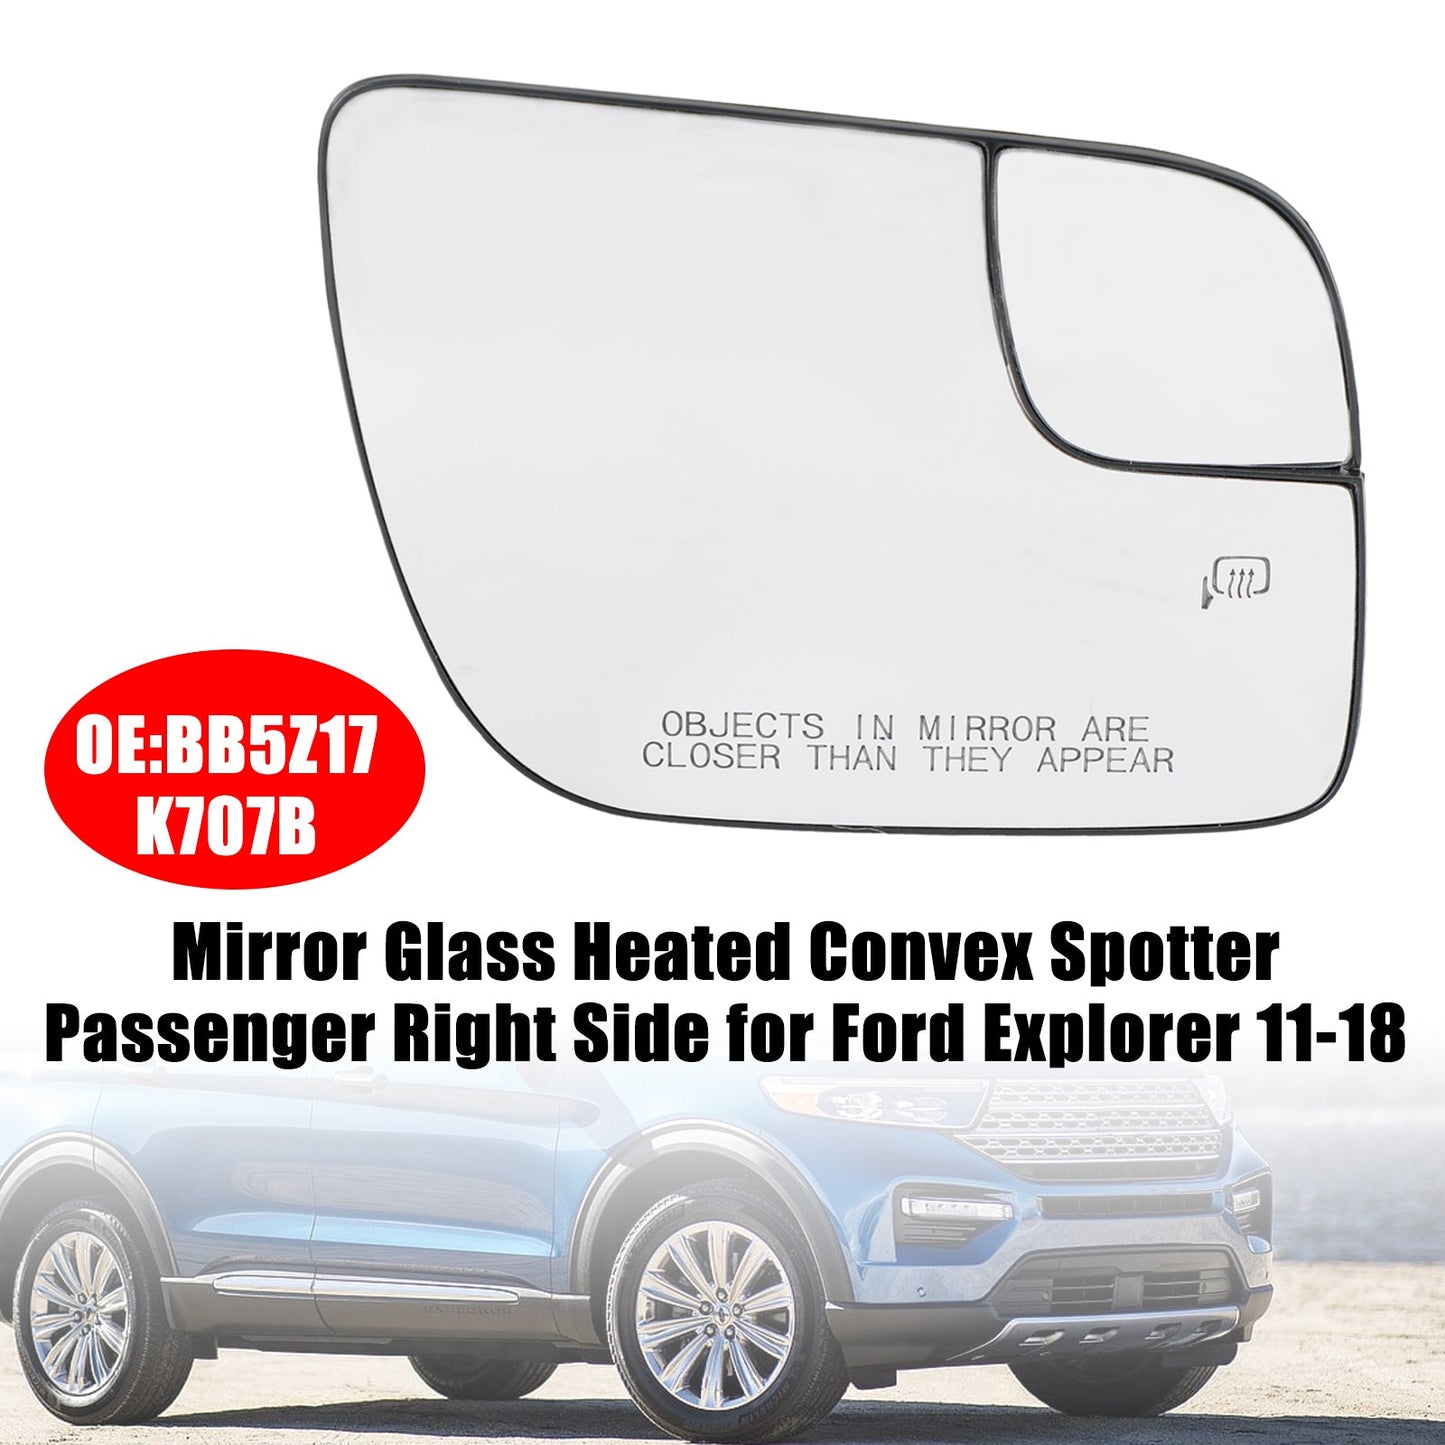 Ford Explorer 11-18 Miroir chauffant Convex Spotter côté passager droit pour